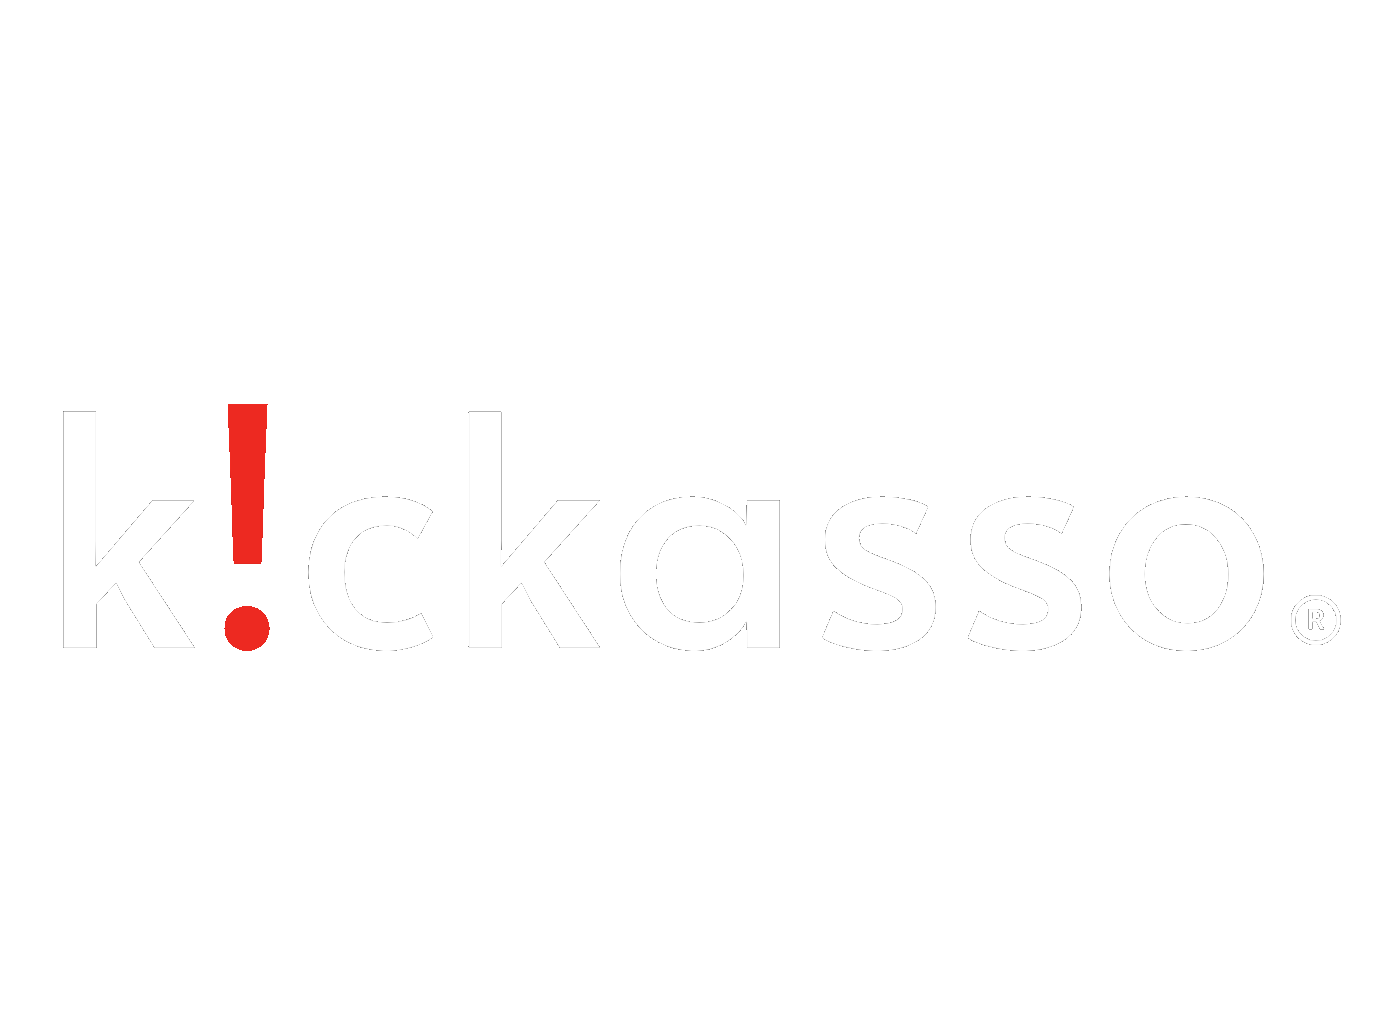 Kickasso Digital